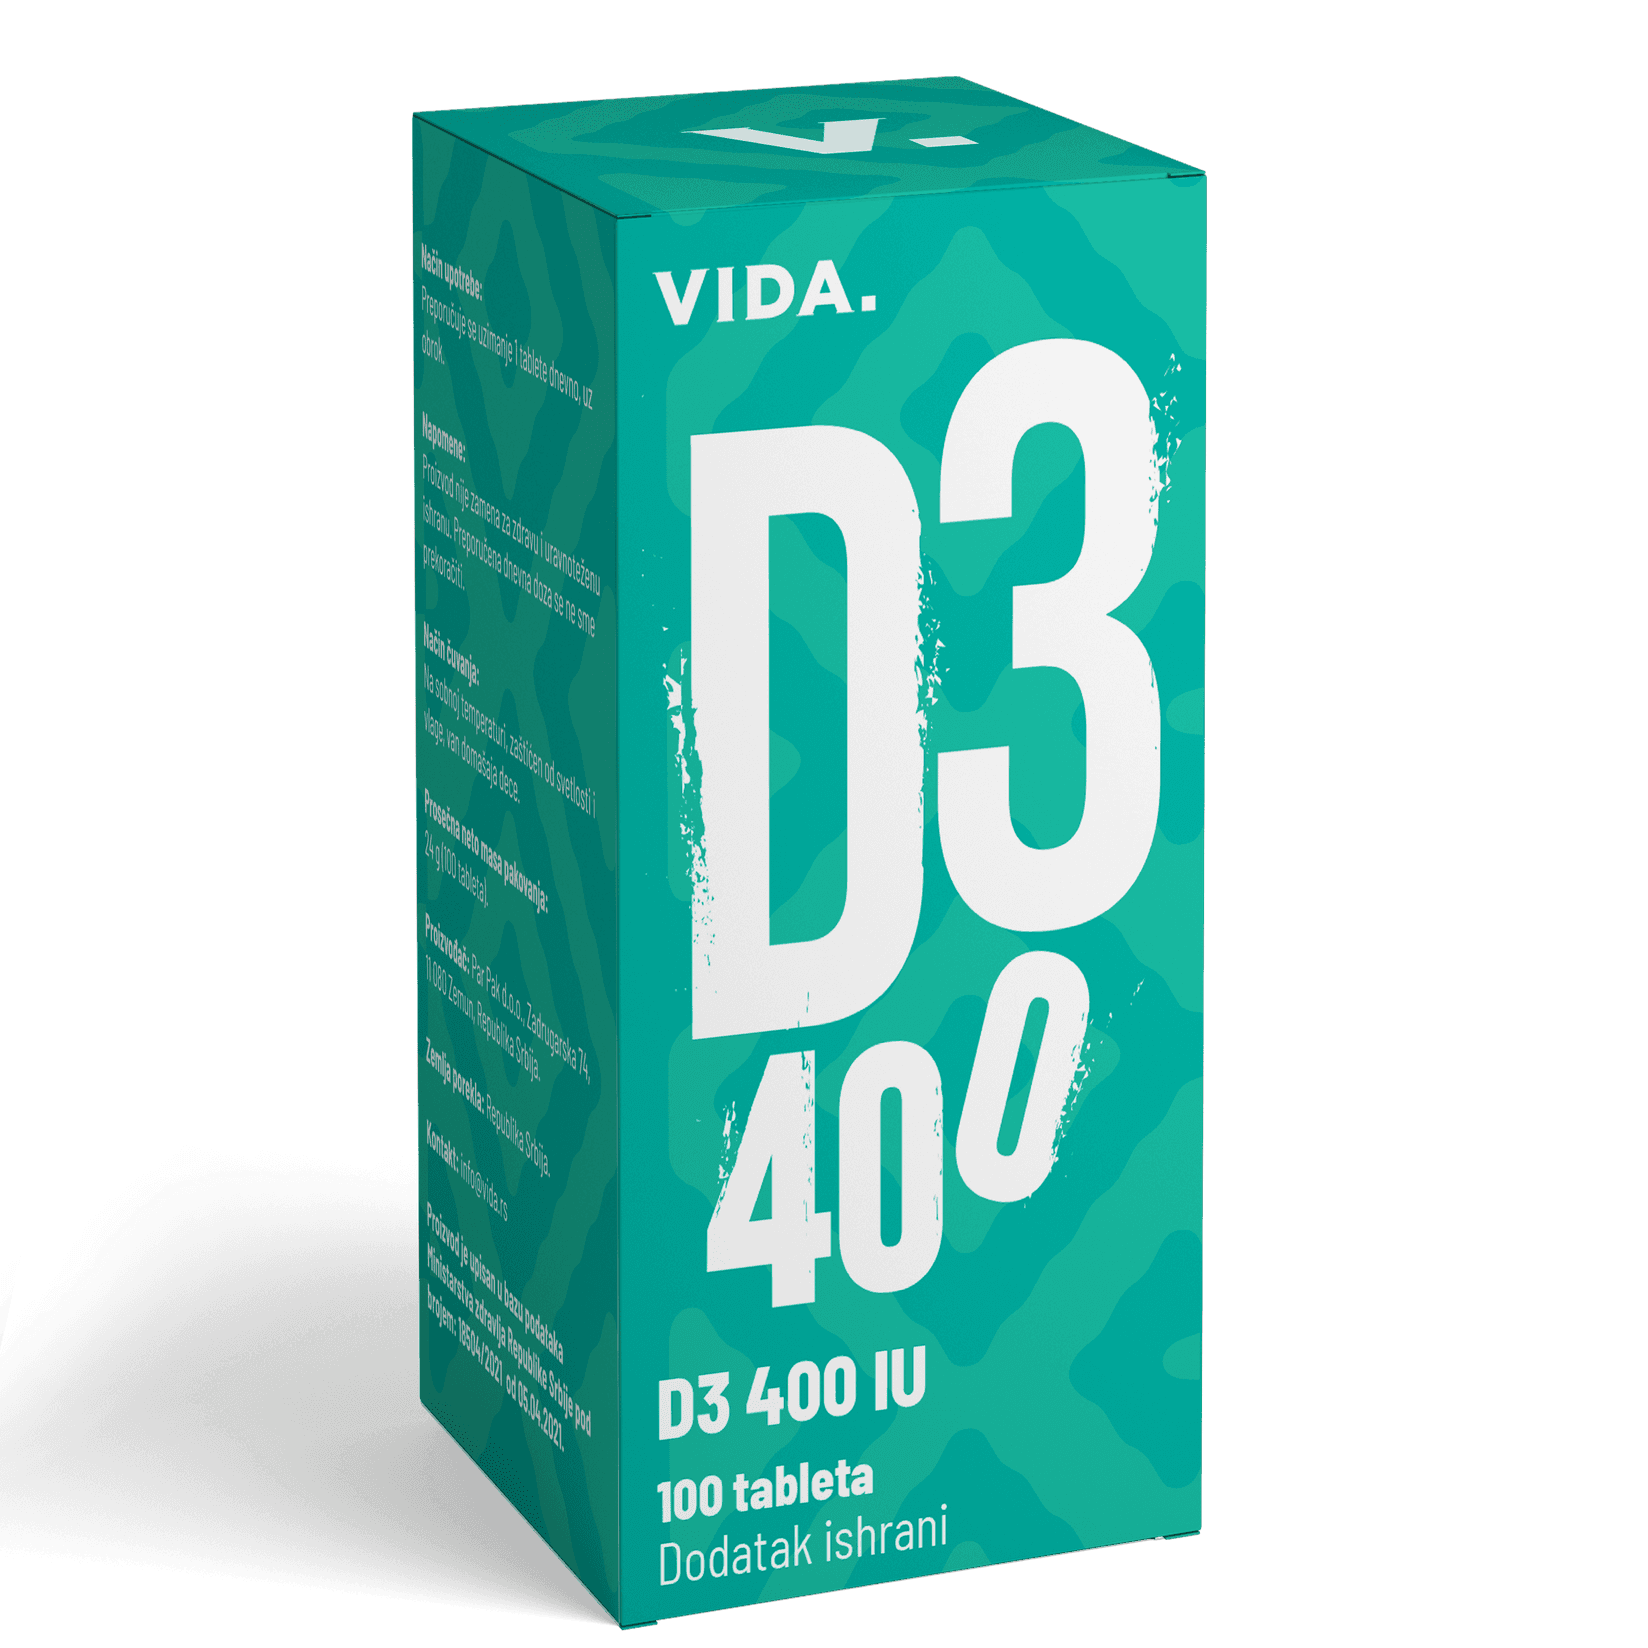 VIDA D3 400IU 100 tableta